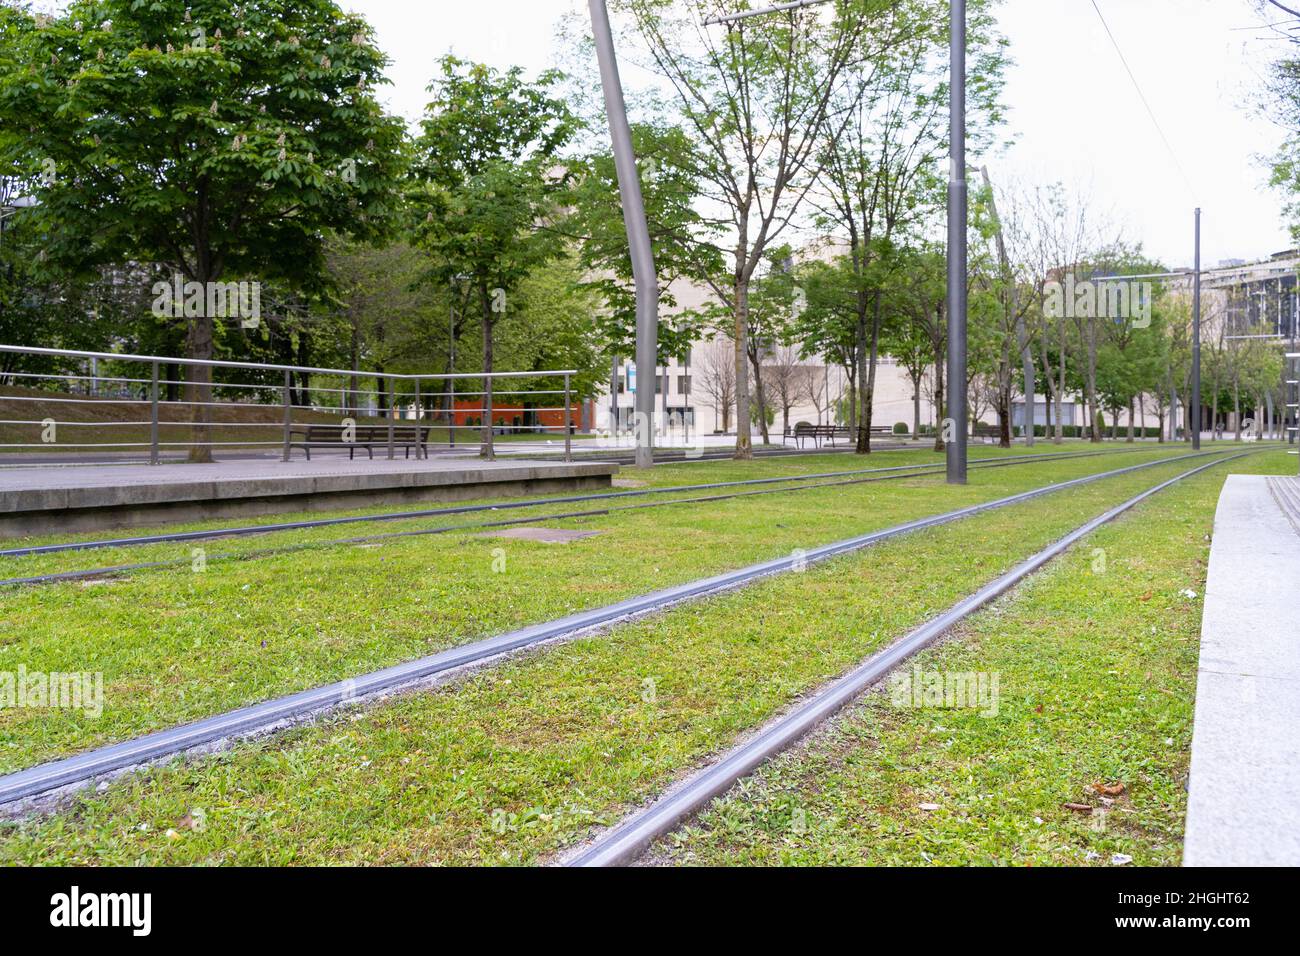 Die Straßenbahn fährt am Bahnhof in Bilbao über grünes Gras. Straßenbahnschienen verschmolzen in natürliche Umgebung, niemand auf Straßenkonzepten Stockfoto